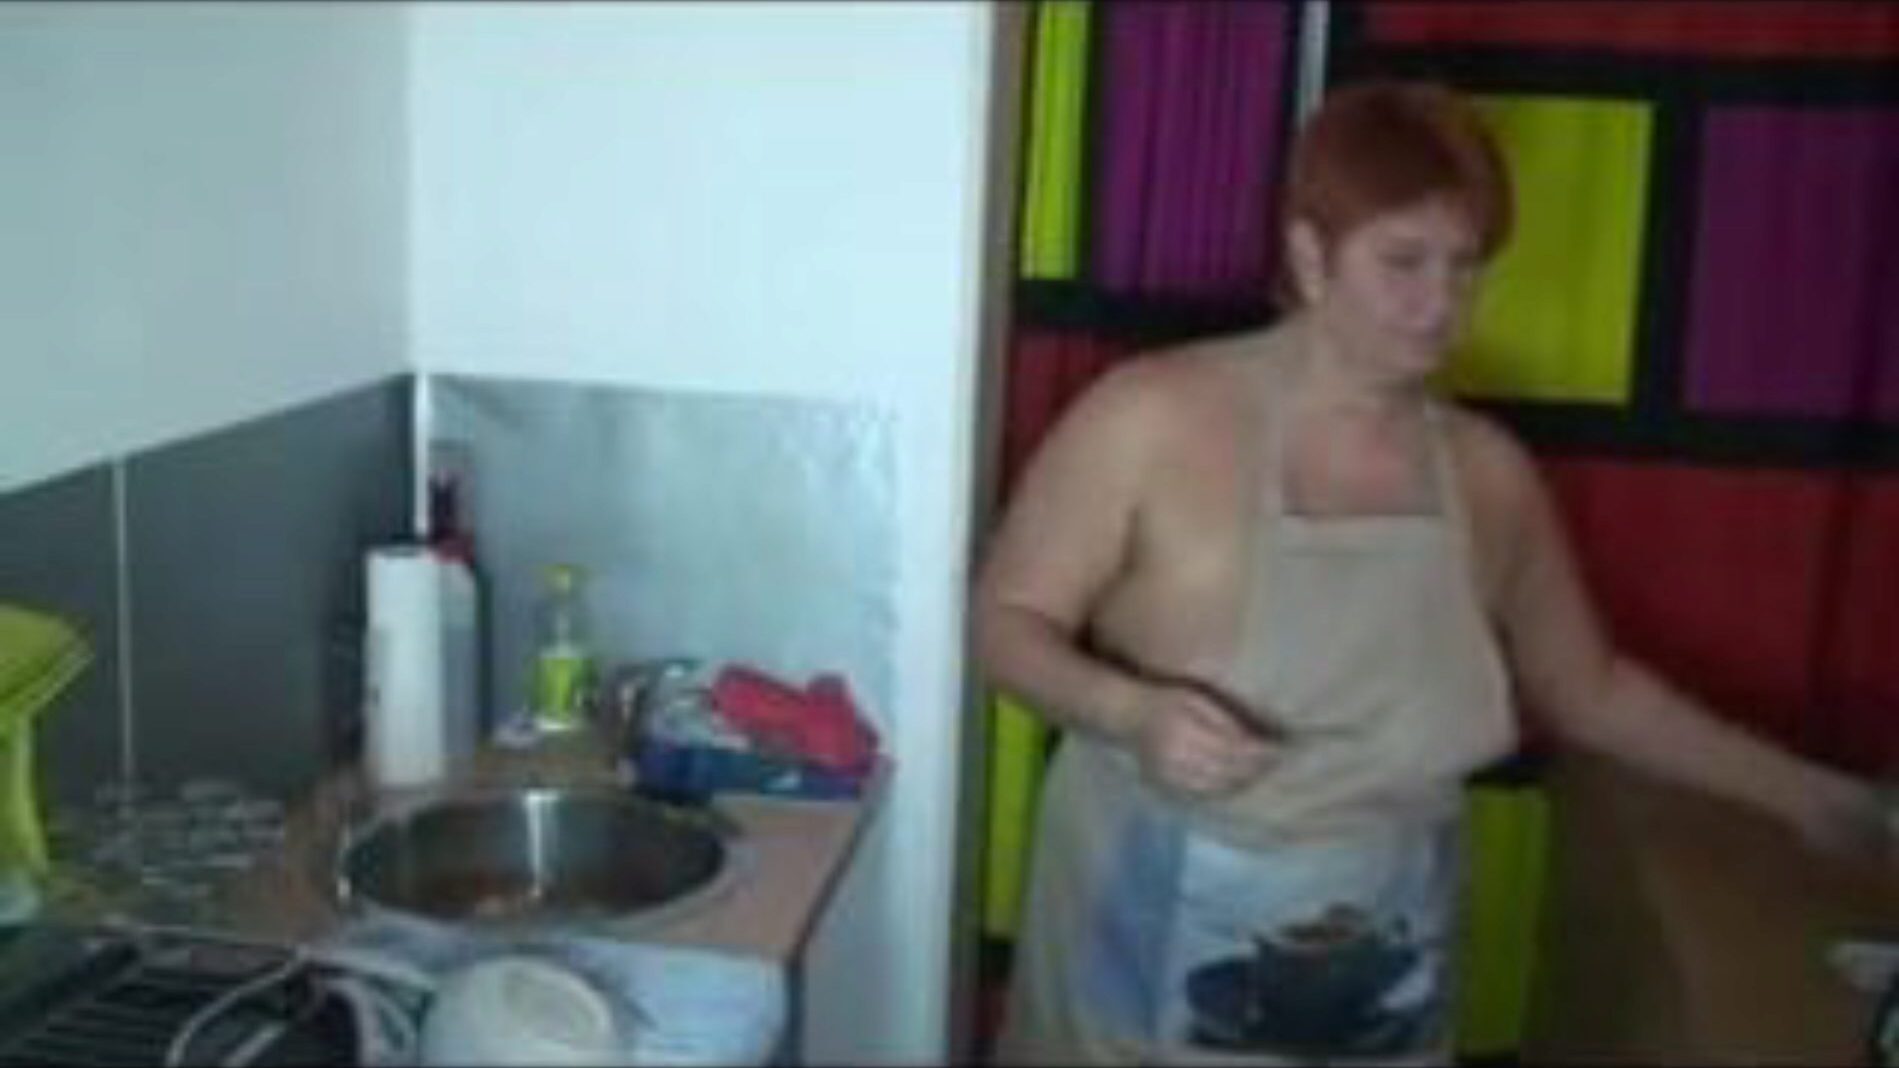 όταν πλένετε πιάτα στην κουζίνα, δωρεάν πορνό 55: xhamster ρολόι όταν πλένετε πιάτα στην κουζίνα κλιπ στο xhamster, ο γιγαντιαίος ιστότοπος σεξουαλικού σωλήνα με τόνους δωρεάν γερμανικών πιο καυτών και ακουστικών πορνογραφικών βίντεο